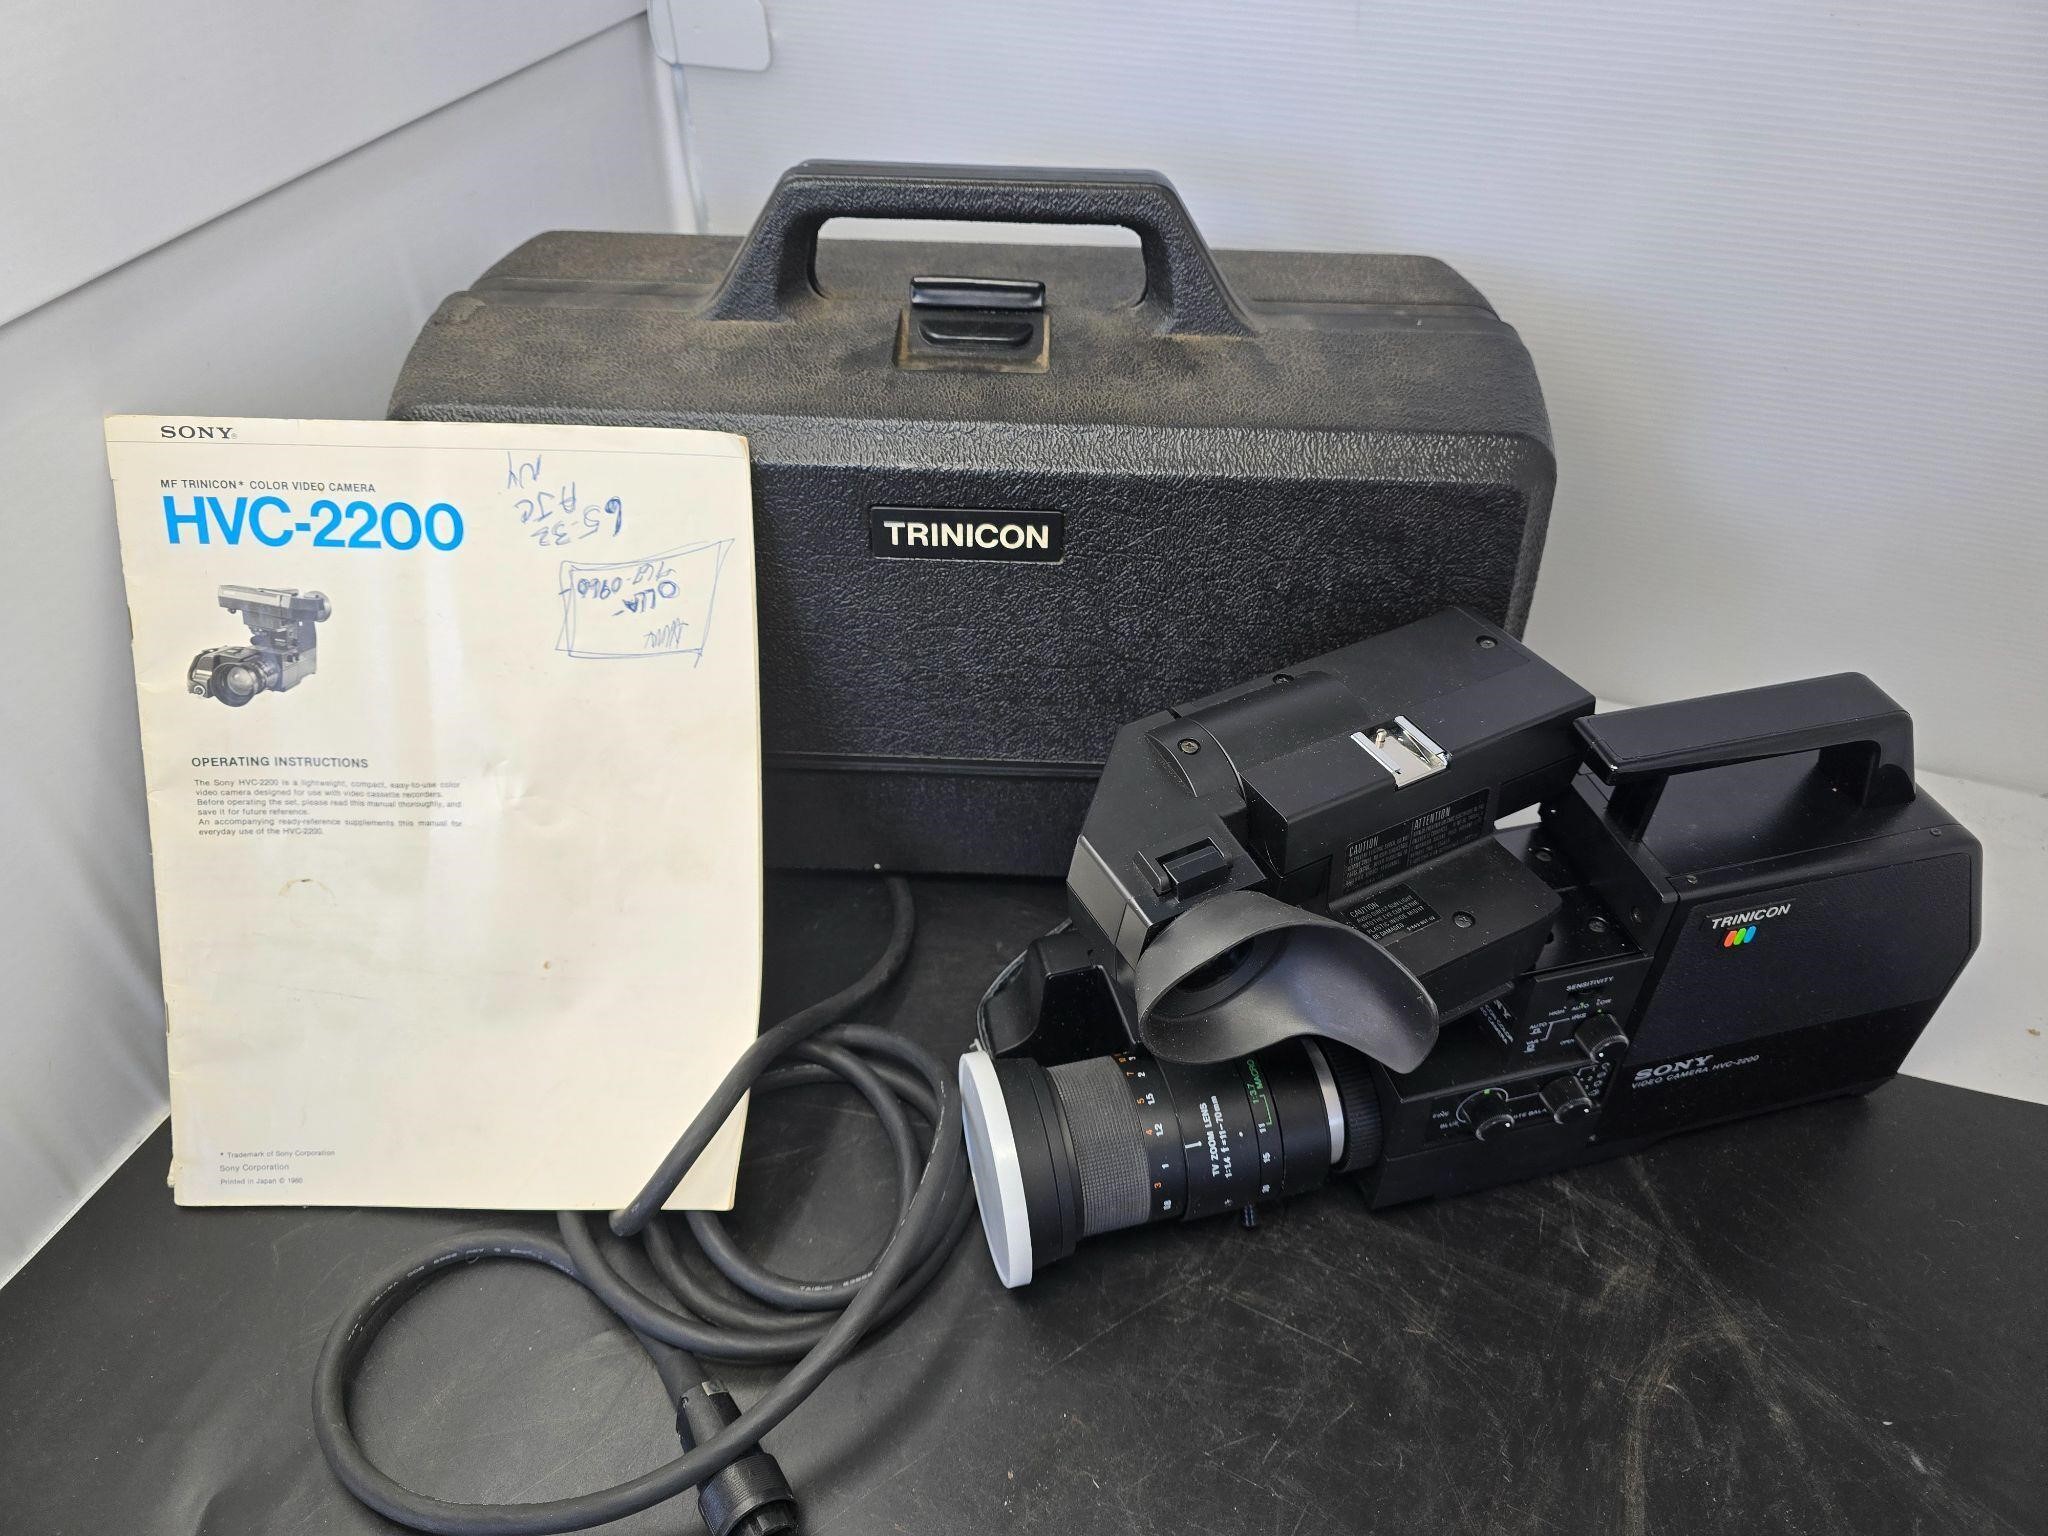 Trinicon color video camera hvc-2200